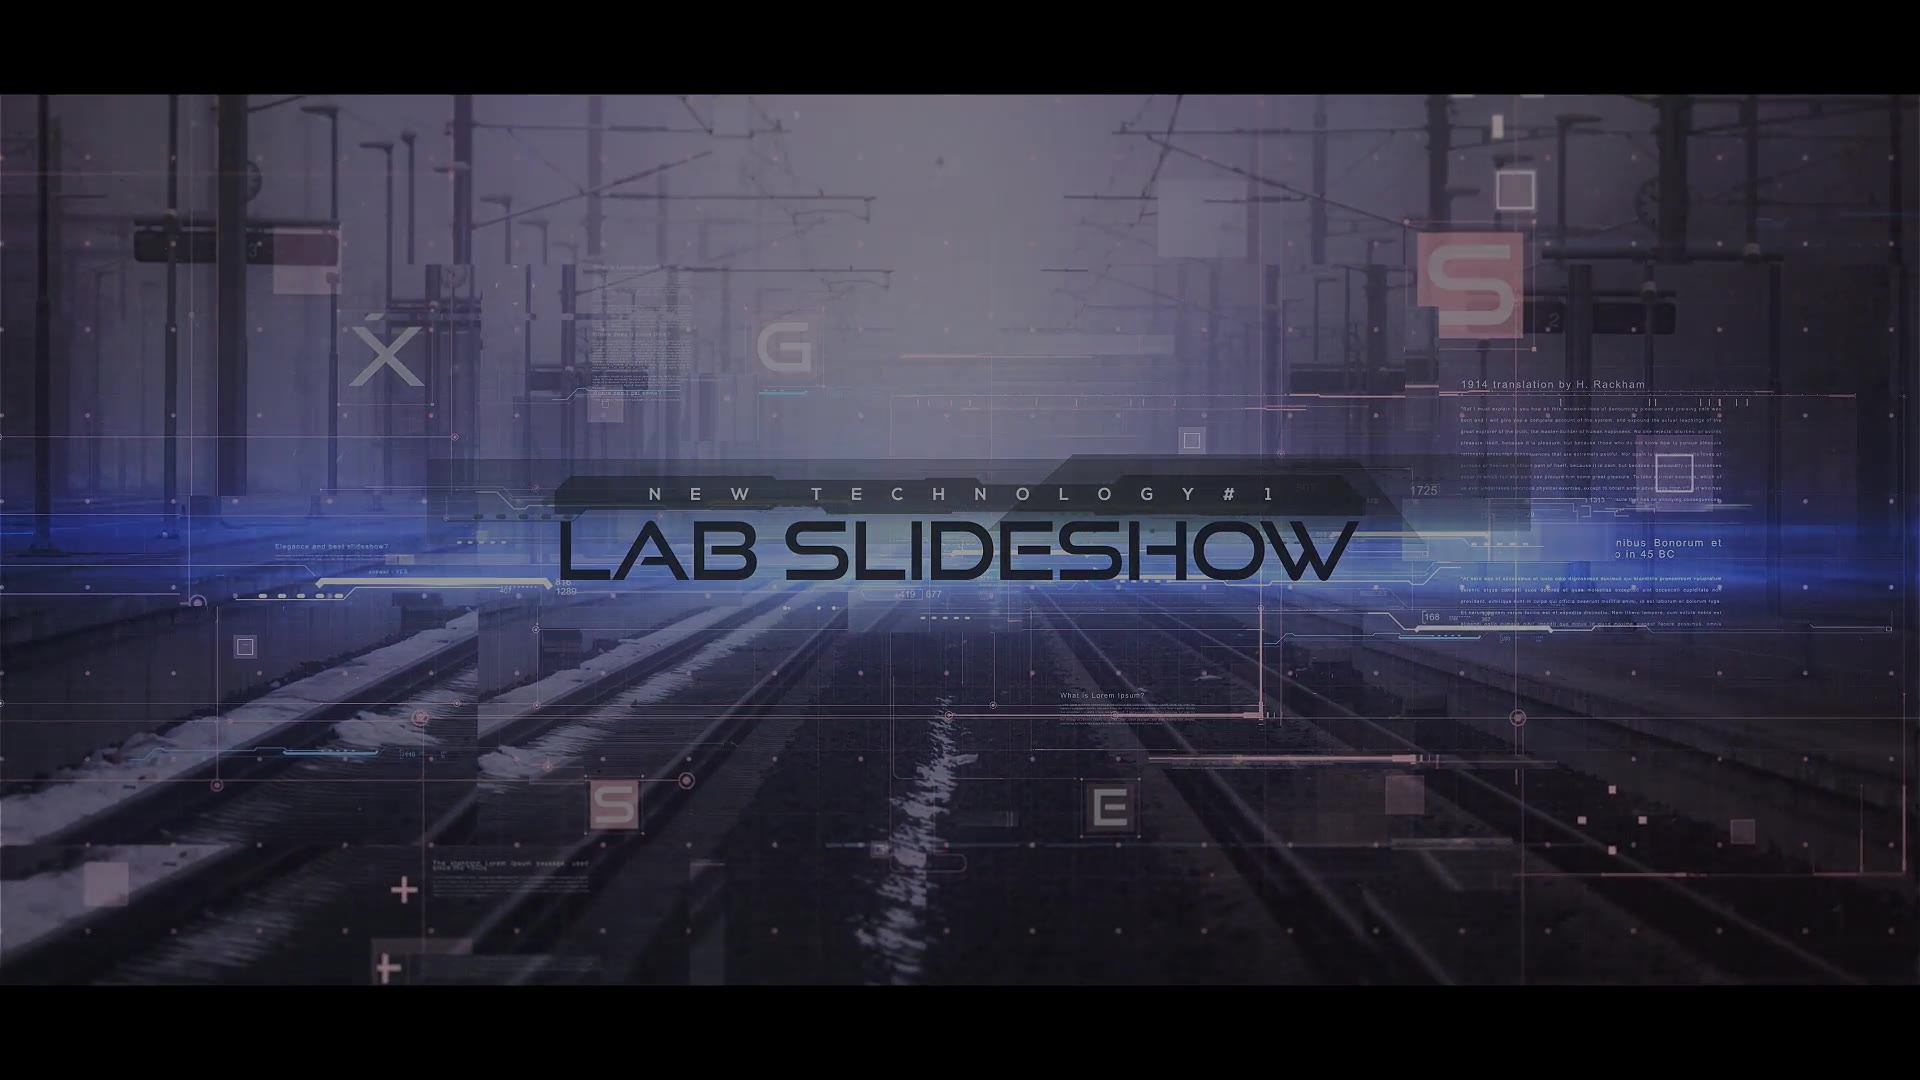 Scientific Laboratory Techno Slideshow Videohive 28805772 Premiere Pro Image 13